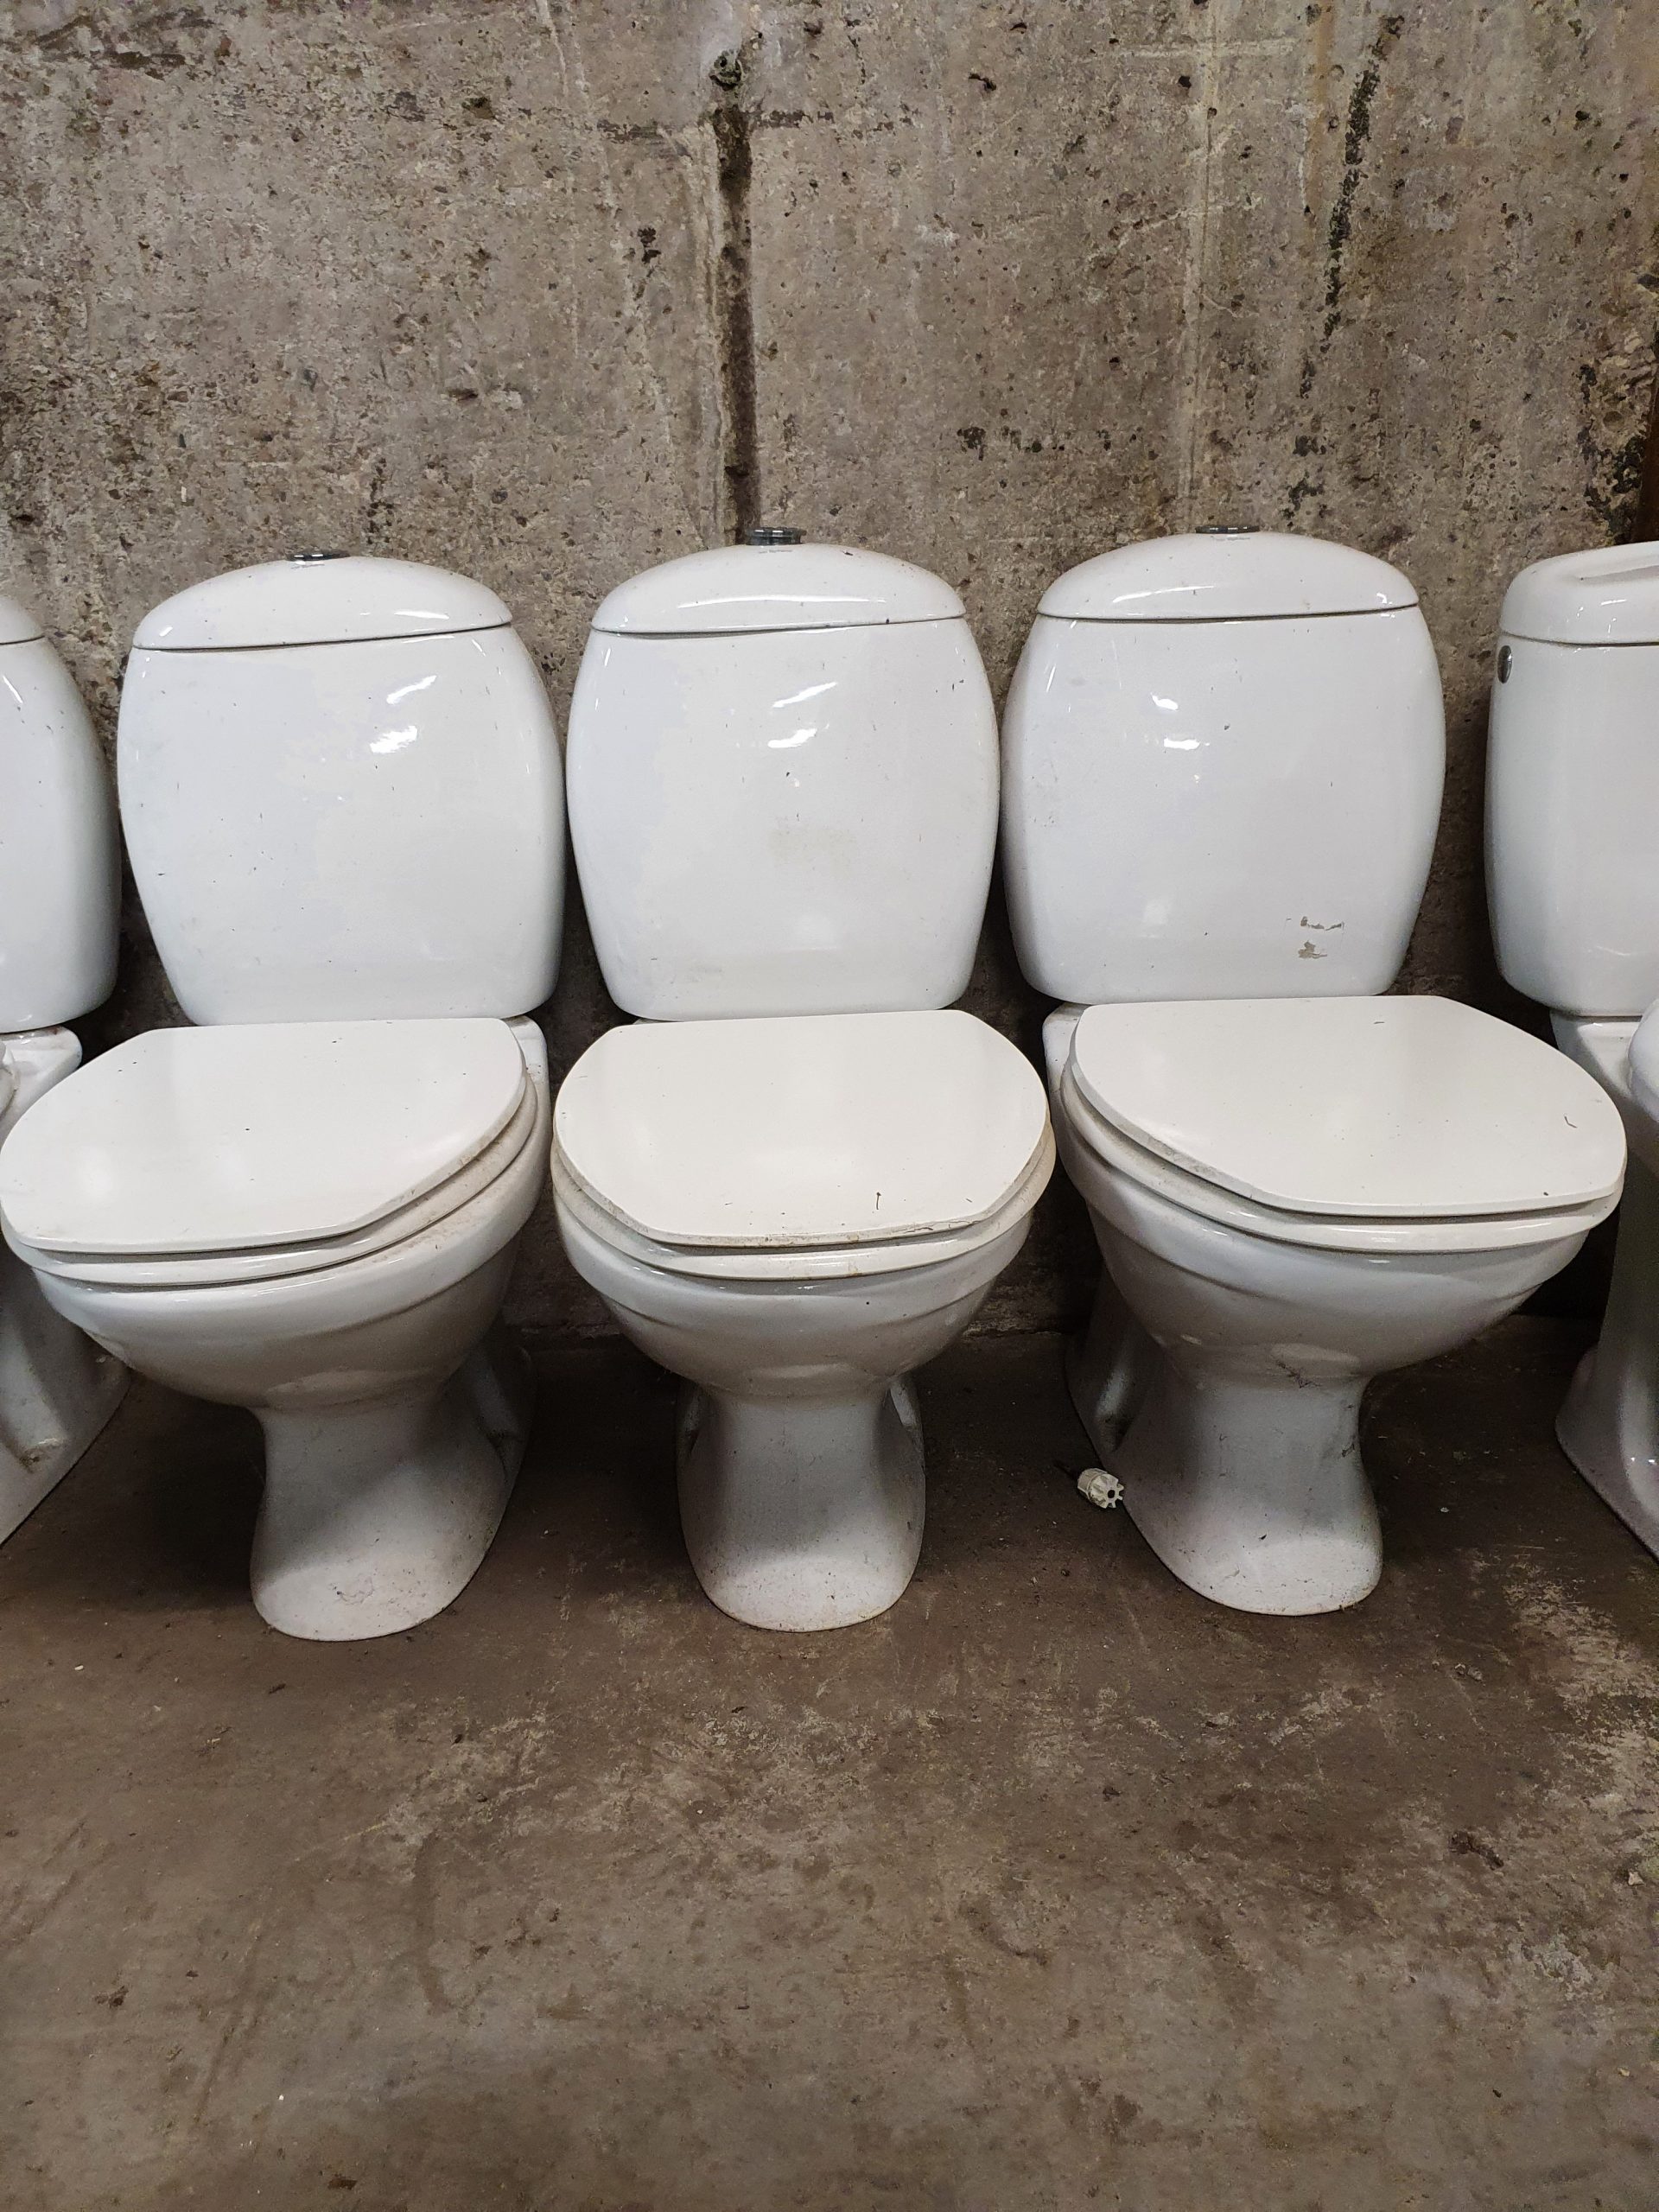 Tweedehands toiletten | potten - Tweedehandsmaterialen